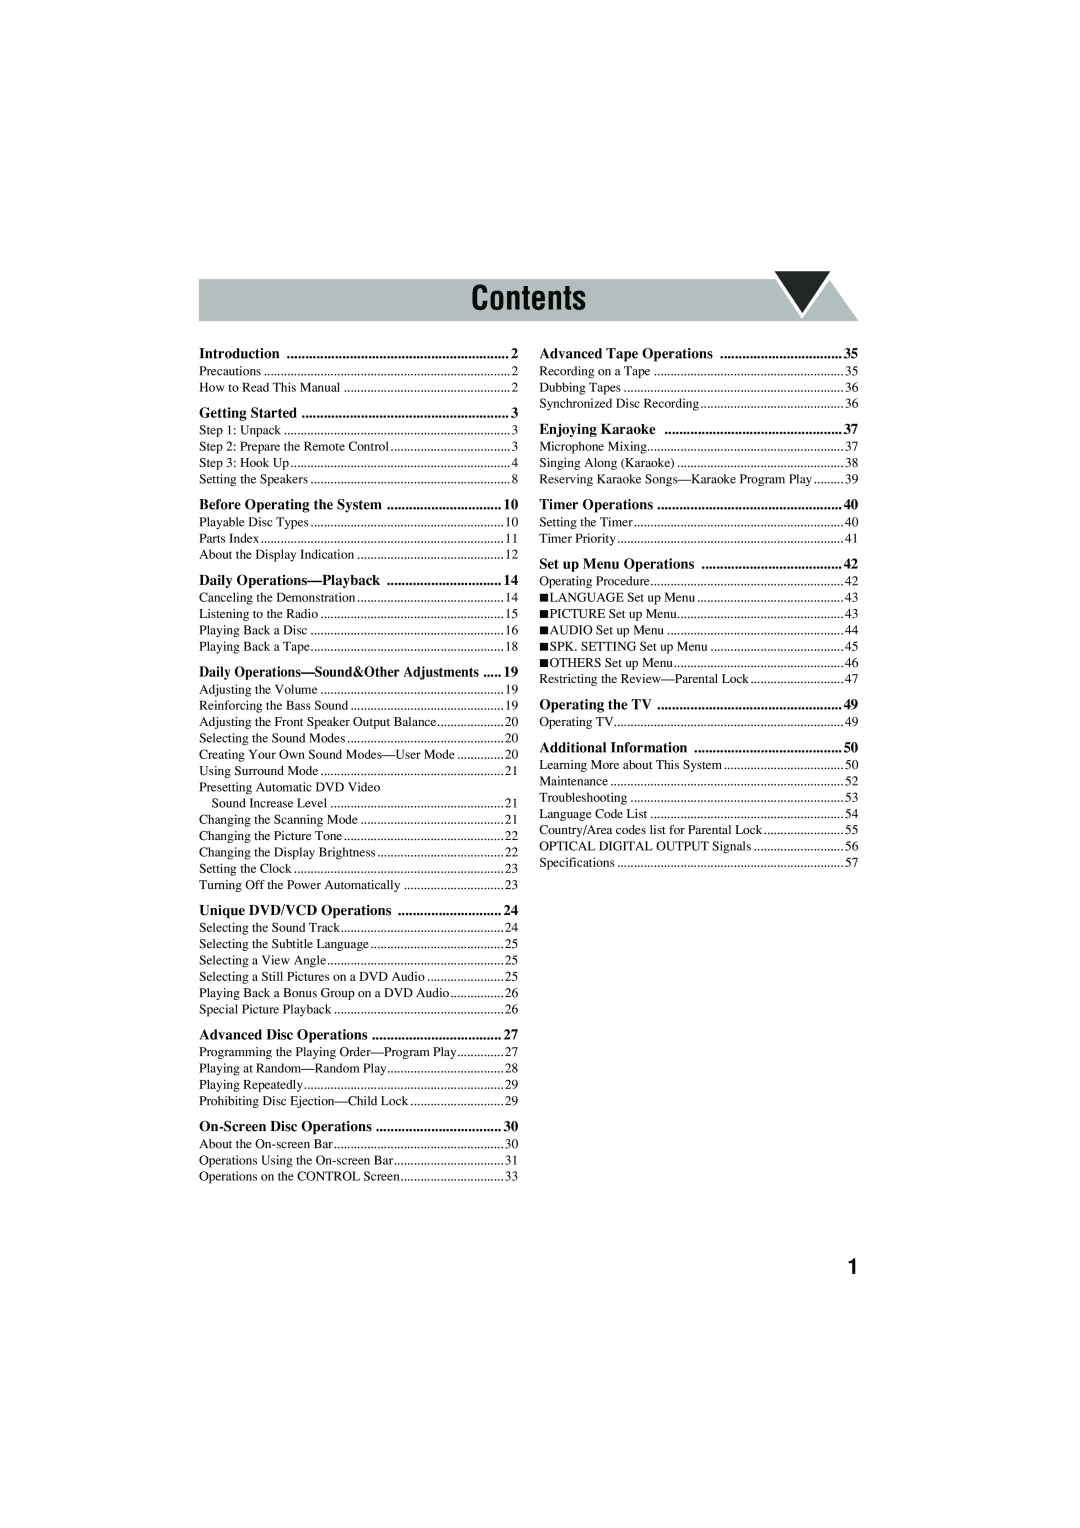 JVC CA-MXJD8UW manual Contents, Introduction 